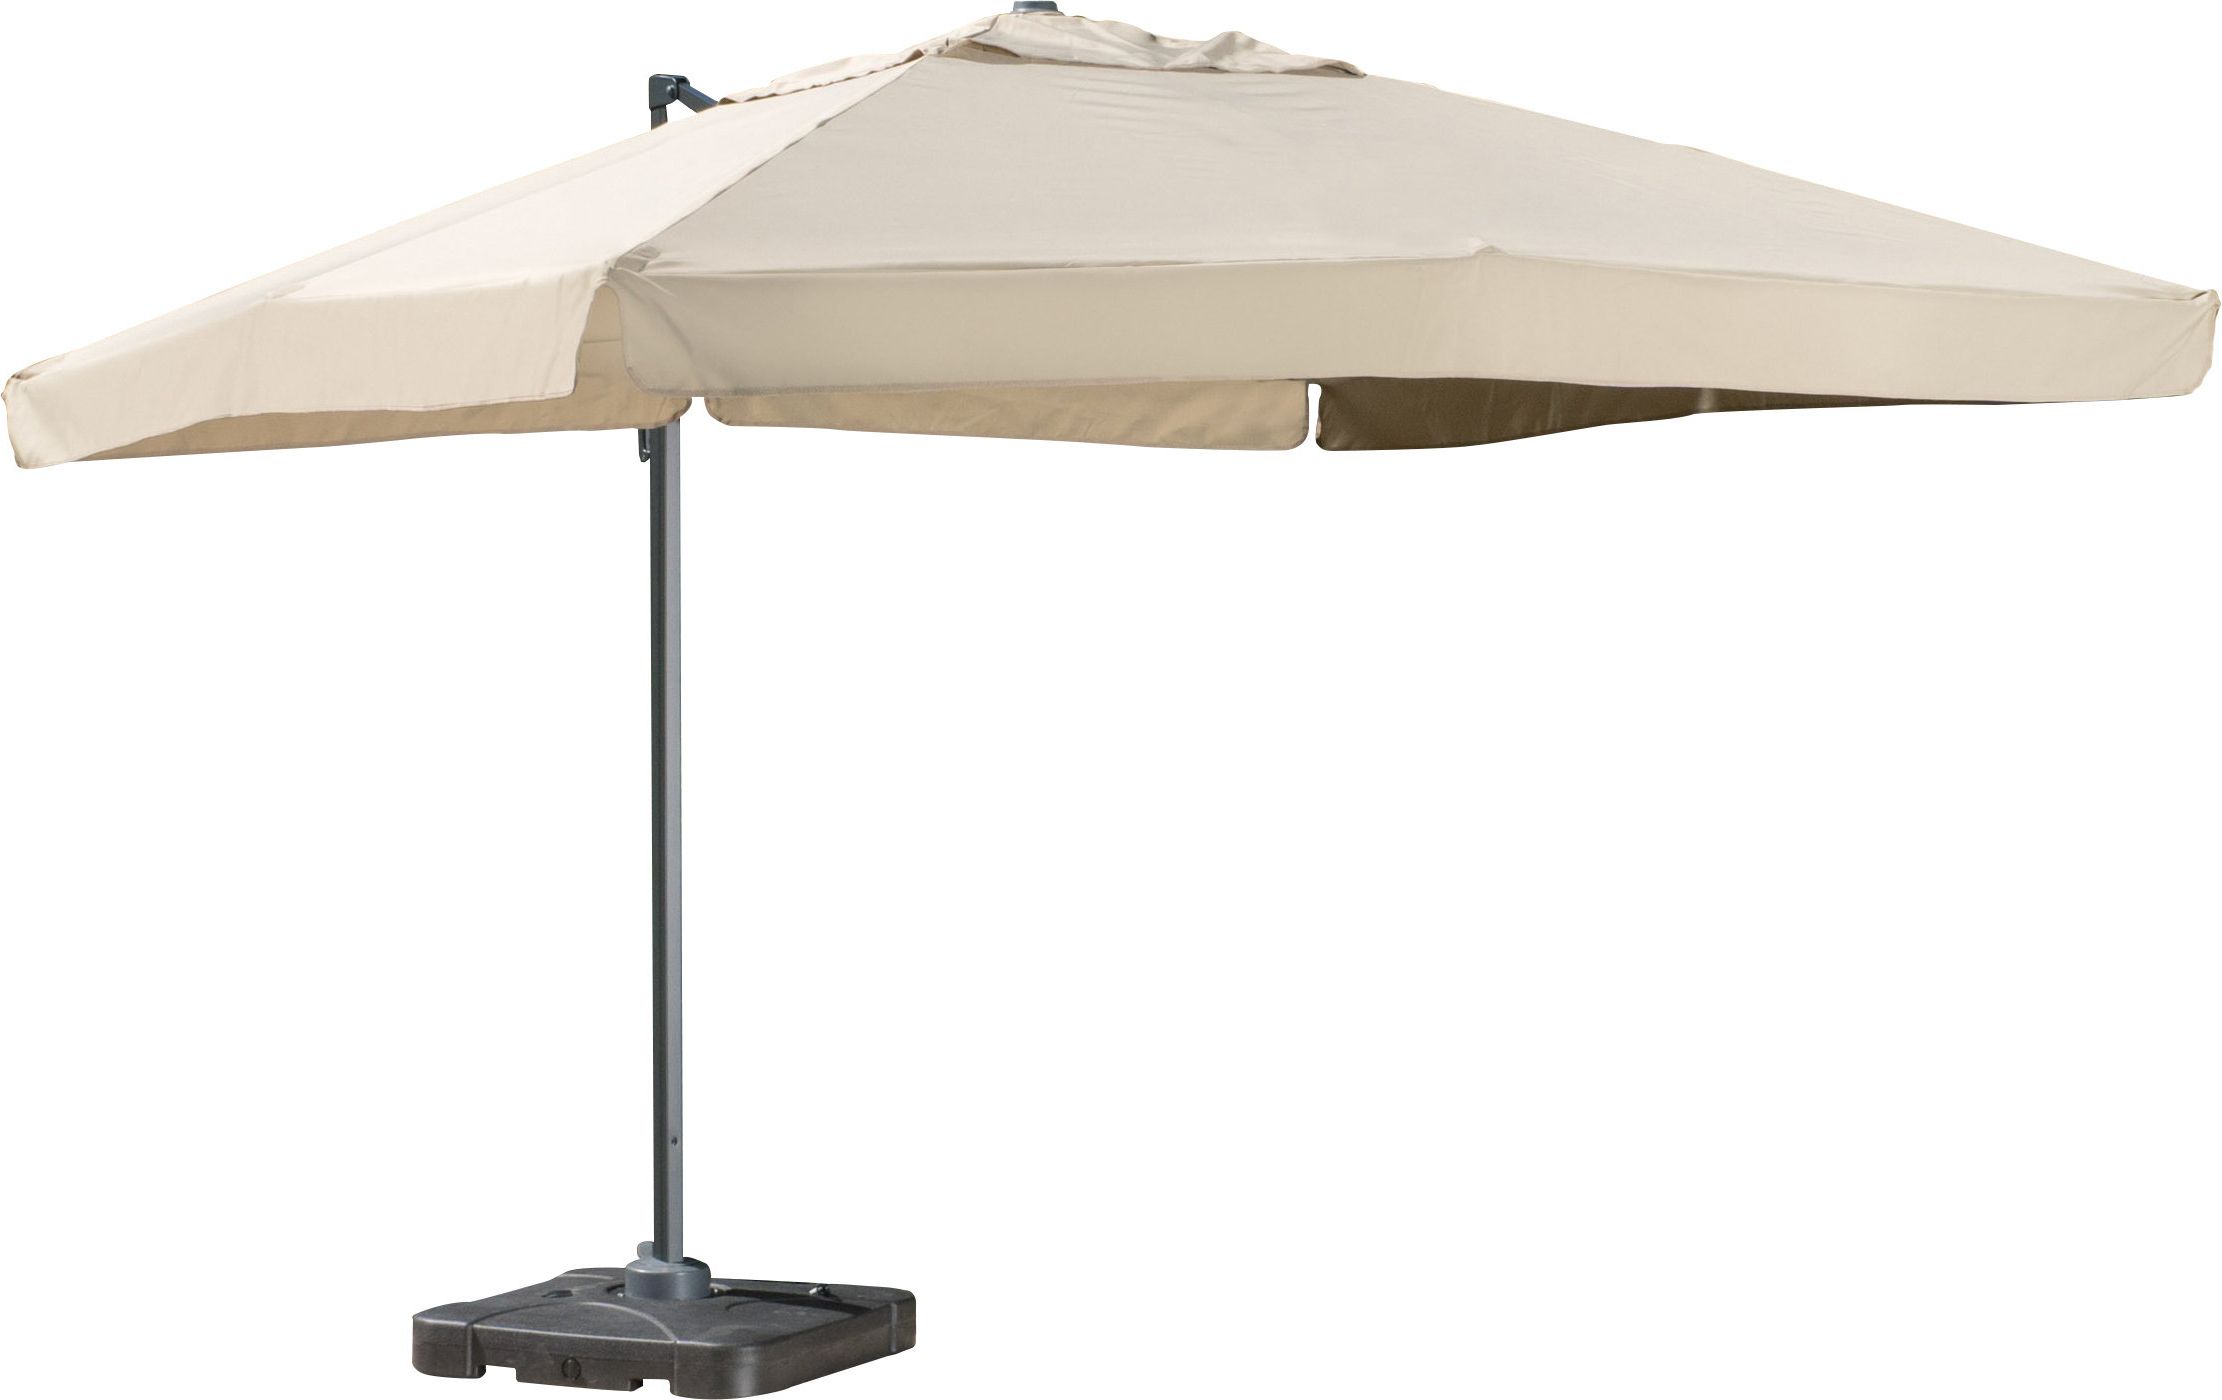 Sol 72 Outdoor Bondi 9.8' Square Cantilever Umbrella Regarding Most Up To Date Bonview Rectangular Market Umbrellas (Photo 8 of 20)